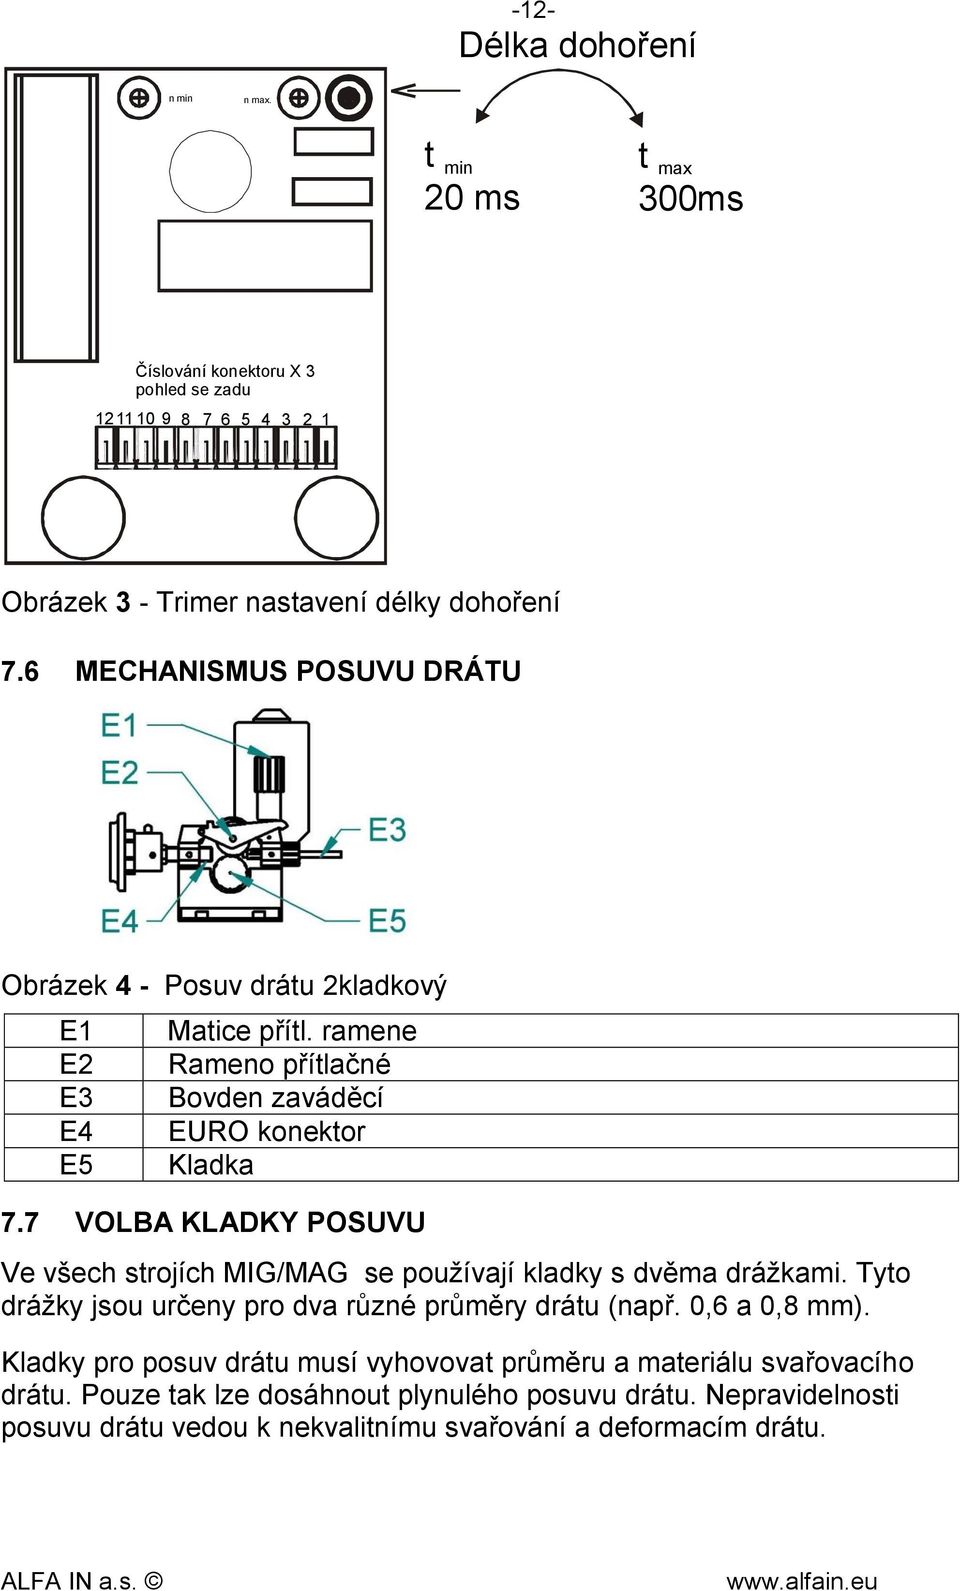 7 VOLBA KLADKY POSUVU Ve všech strojích MIG/MAG se používají kladky s dvěma drážkami. Tyto drážky jsou určeny pro dva různé průměry drátu (např. 0,6 a 0,8 mm).